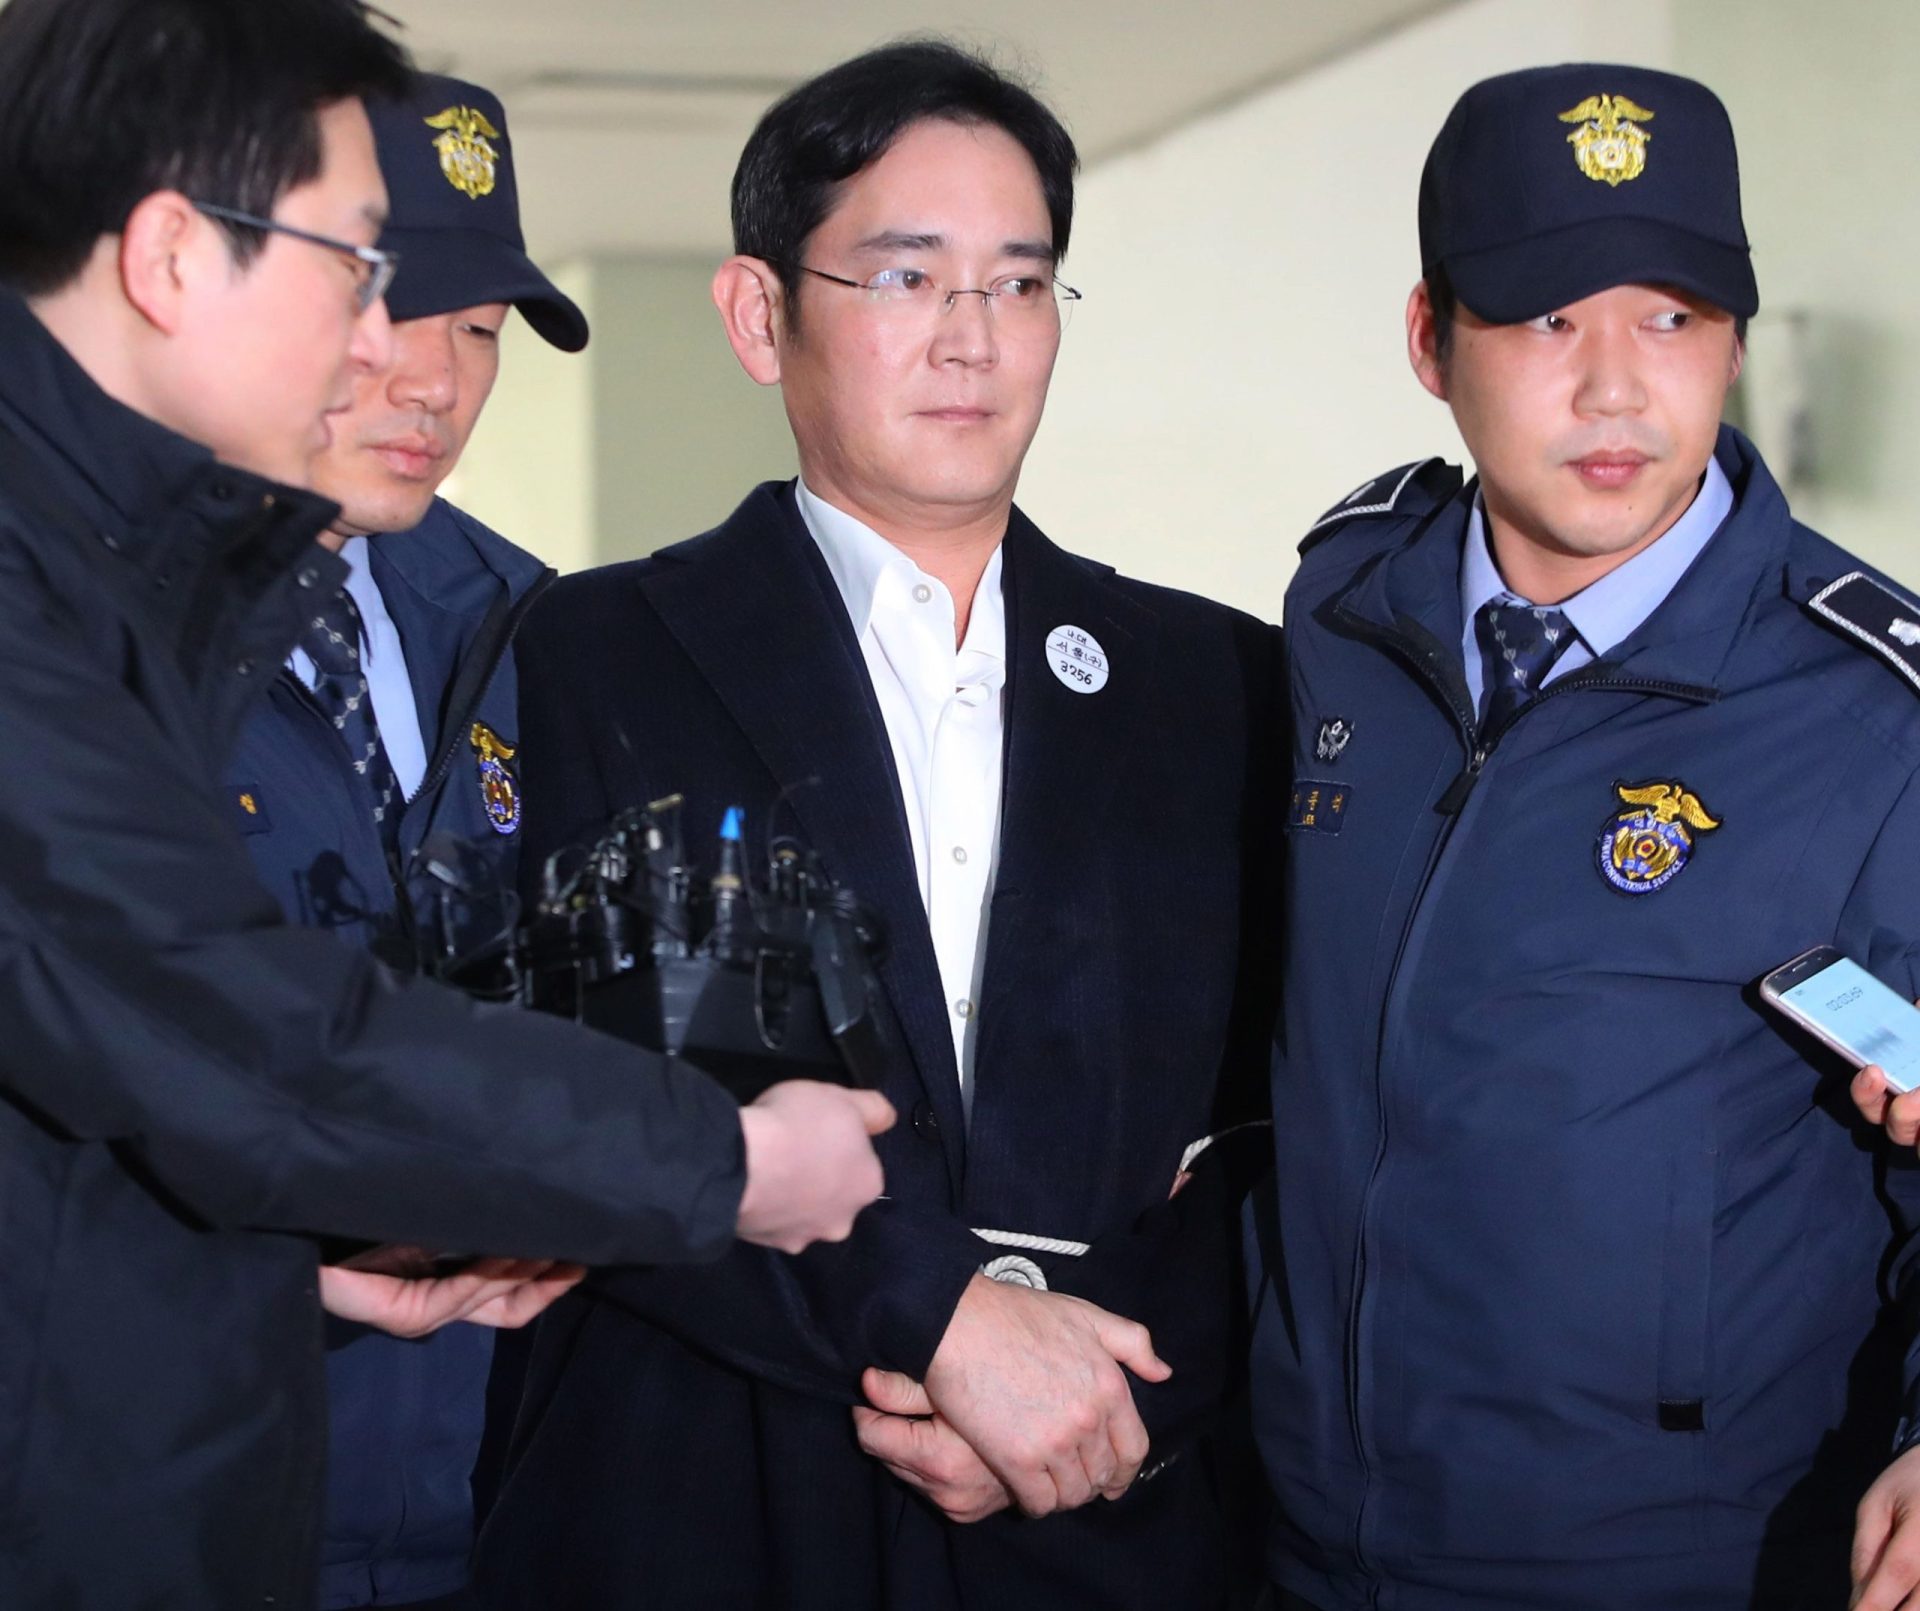 Herdeiro da Samsung comparece algemado ao interrogatório sobre escândalo de corrupção em Seul